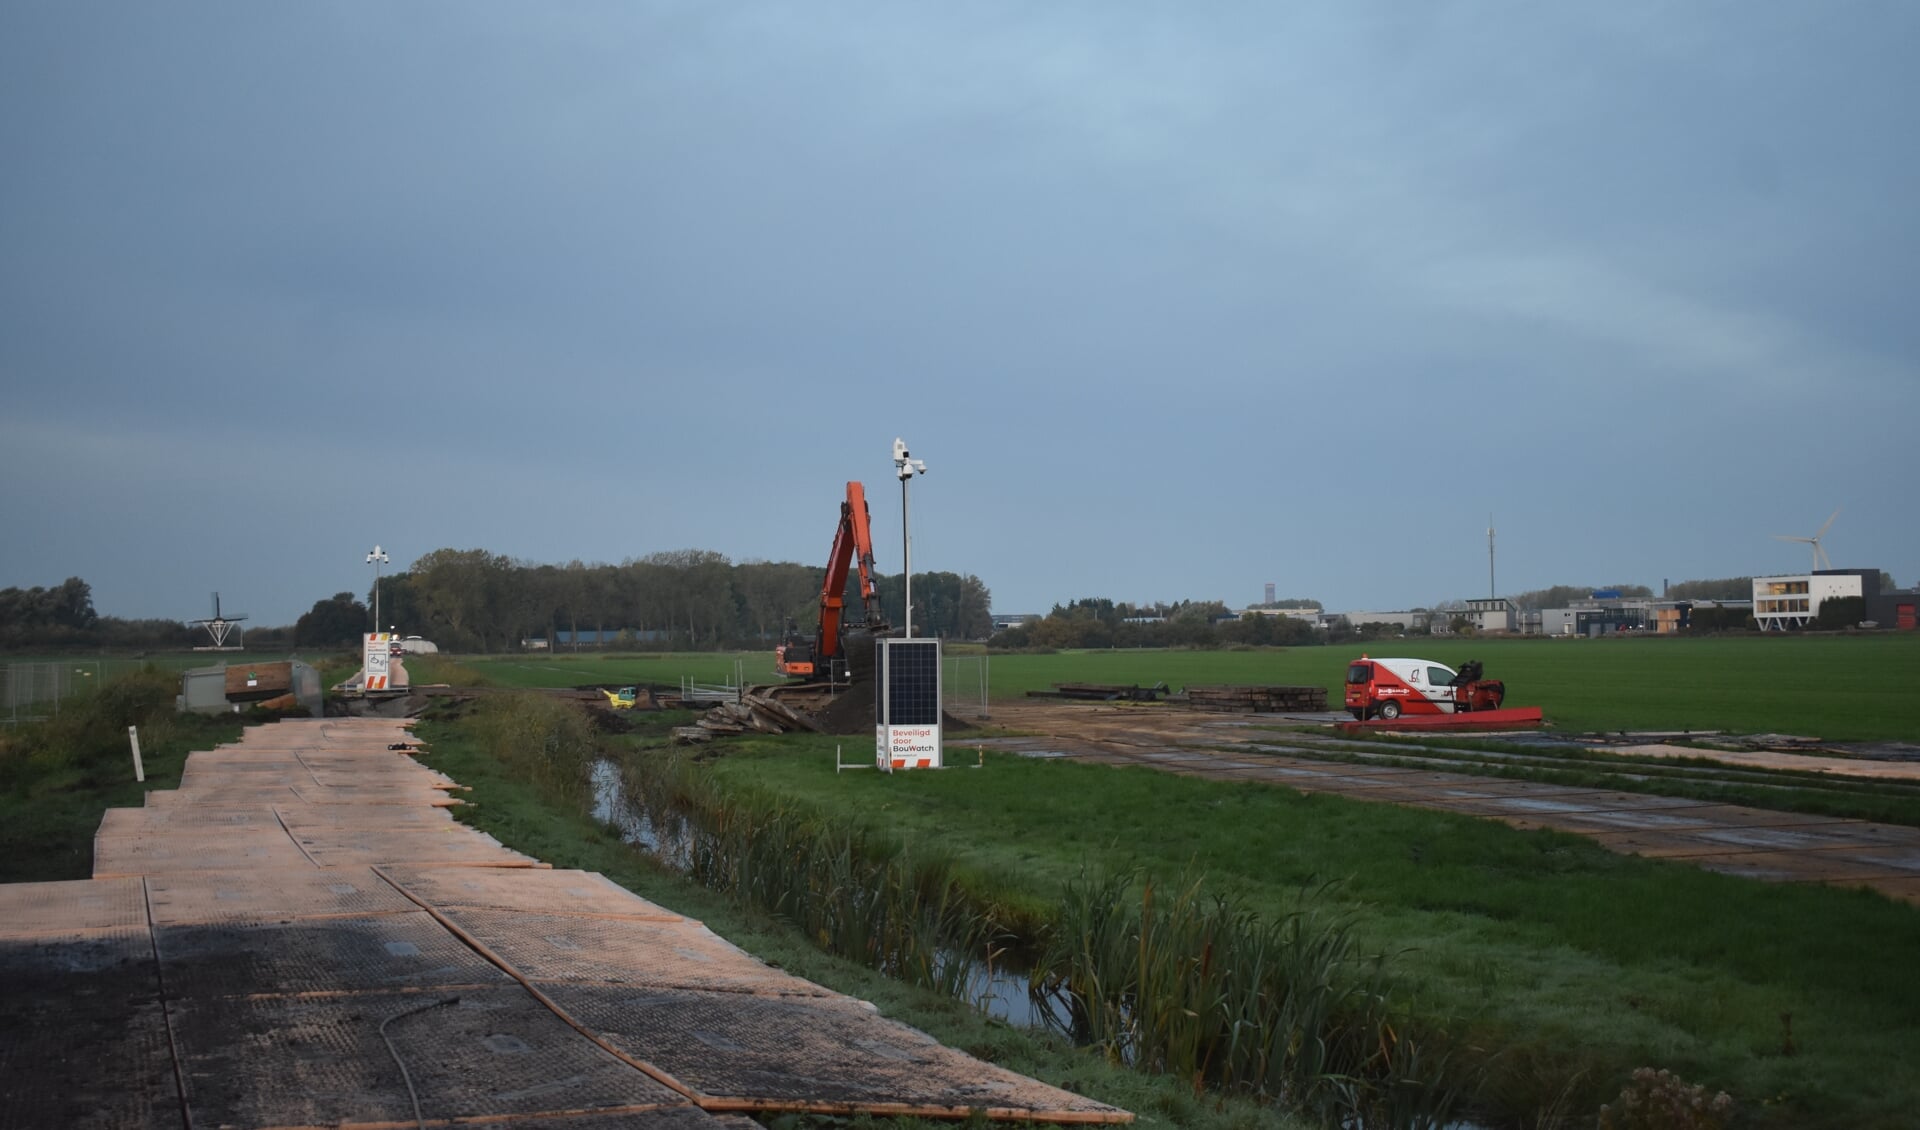 Links de transformator. Een machinist van Bijlsma BV ruimt de rijplaten in het weiland op. Rechtsachter bedrijventerrein De Hemrik in Leeuwarden.